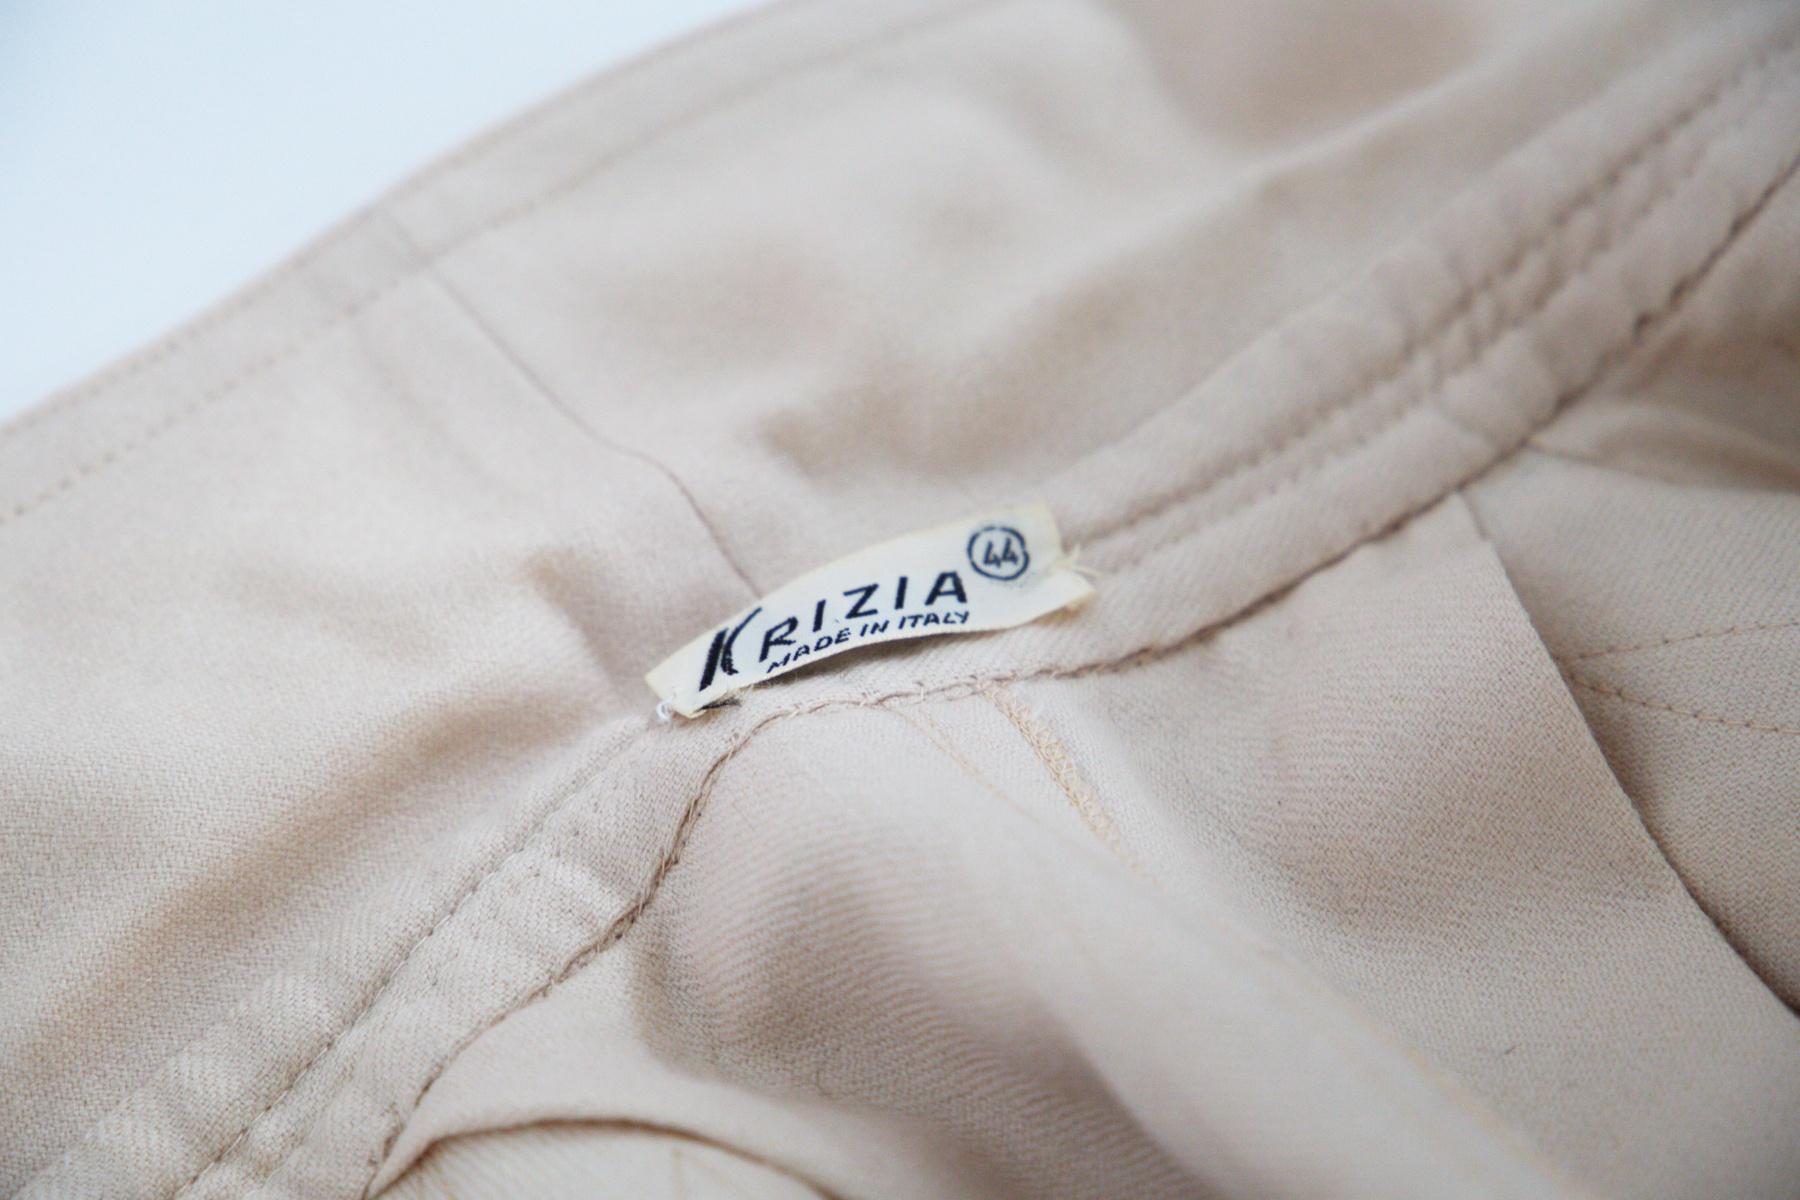 Robe beige sensuelle de Krizia des années 1990, fabriquée en Italie.
La robe est entièrement faite de coton beige et est longue jusqu'en dessous des genoux, avec des manches longues.
La robe a des manches longues agrémentées de bretelles fines et